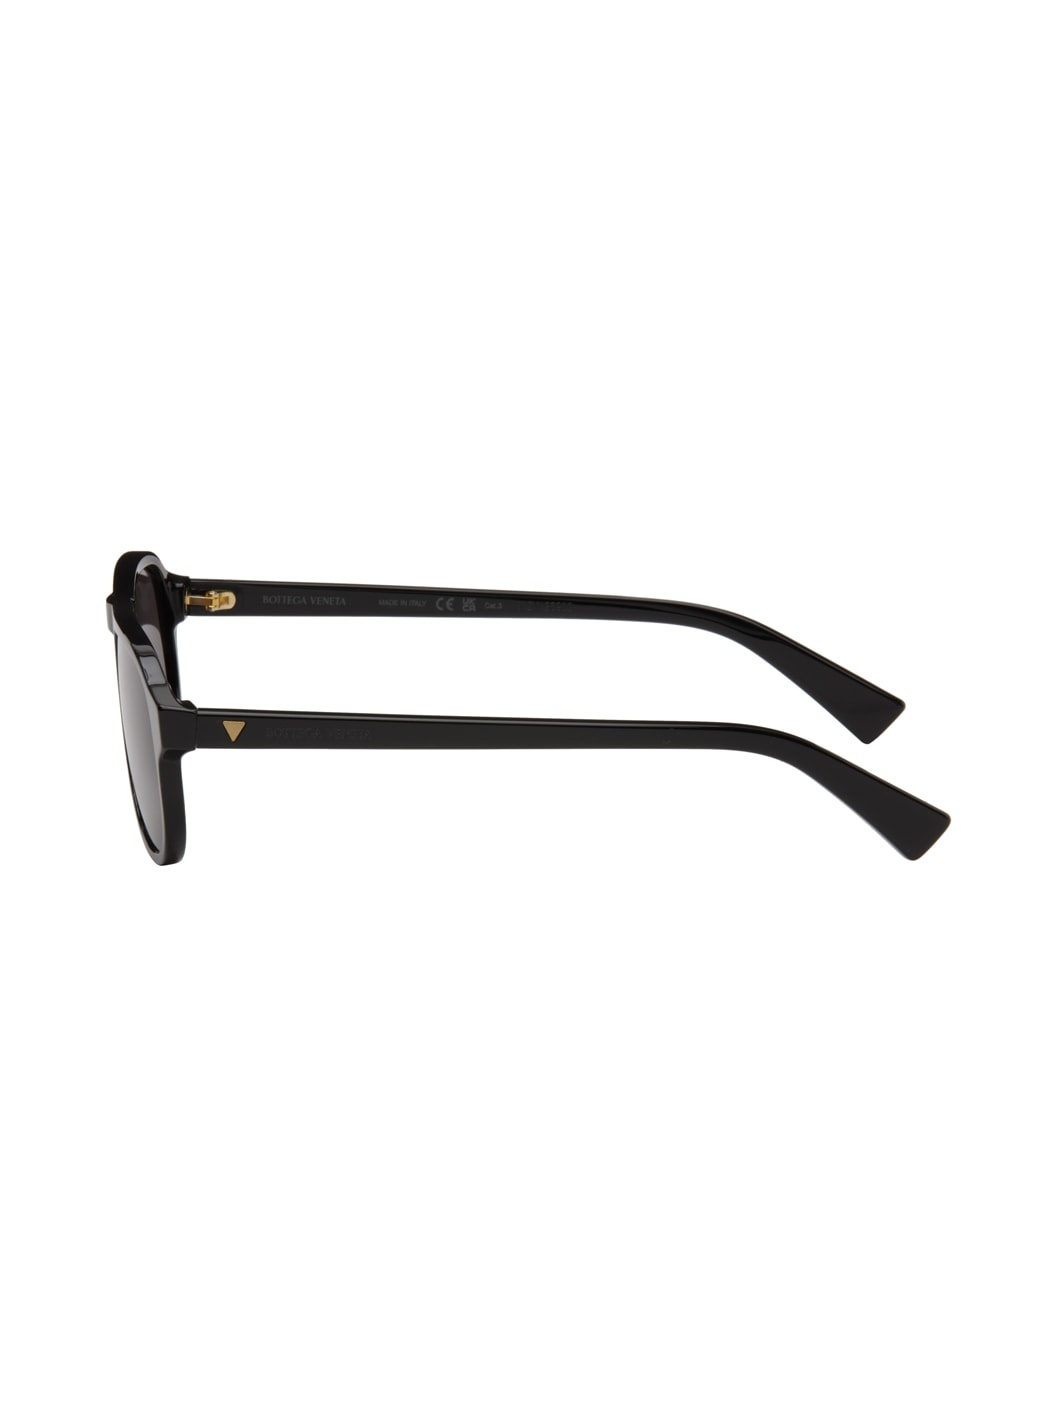 Black Aviator Sunglasses - 3